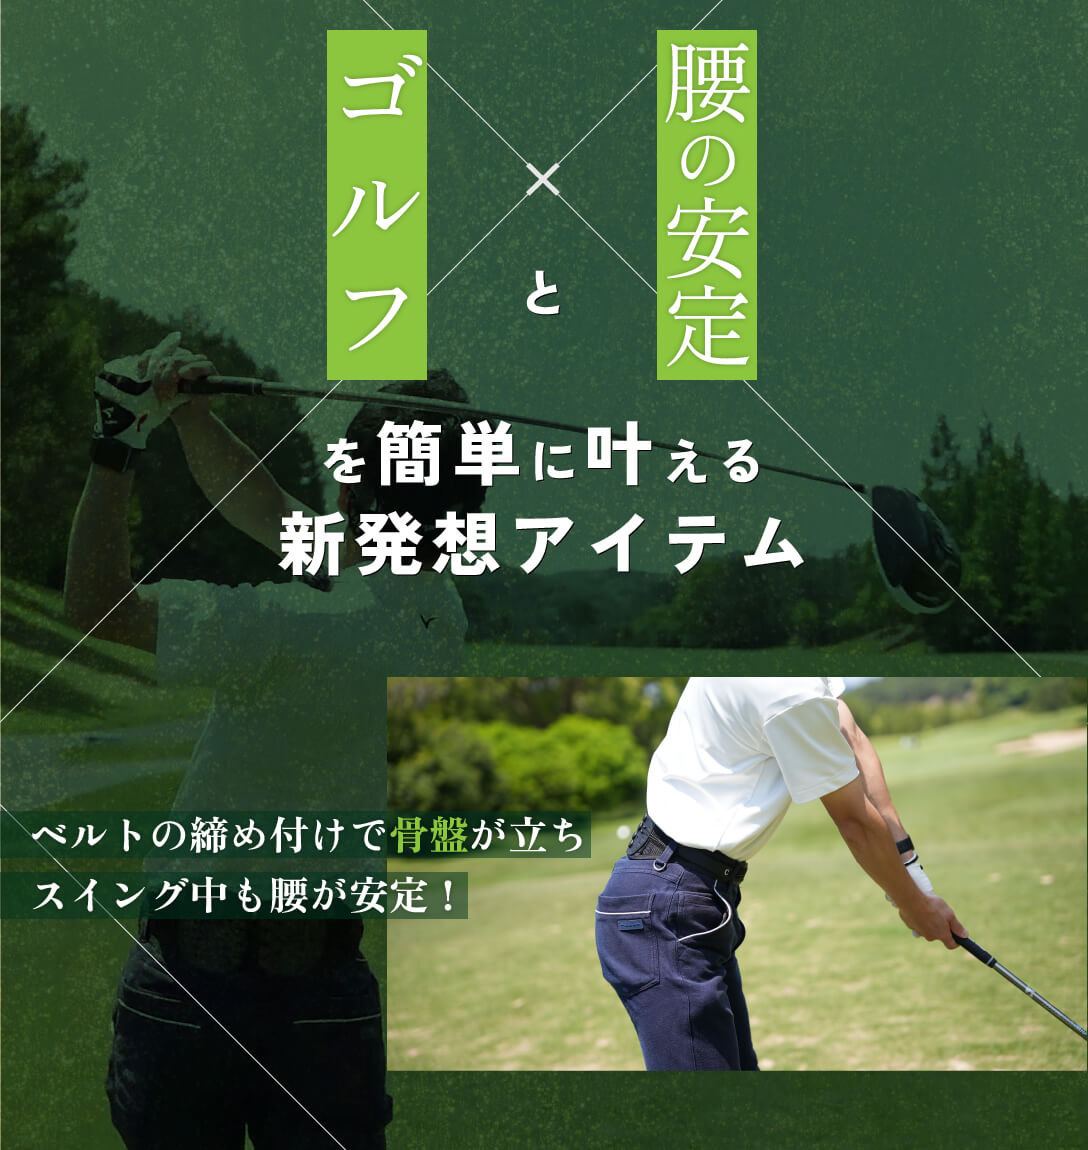 ゴルフと腰の安定を簡単に叶える新発想アイテム